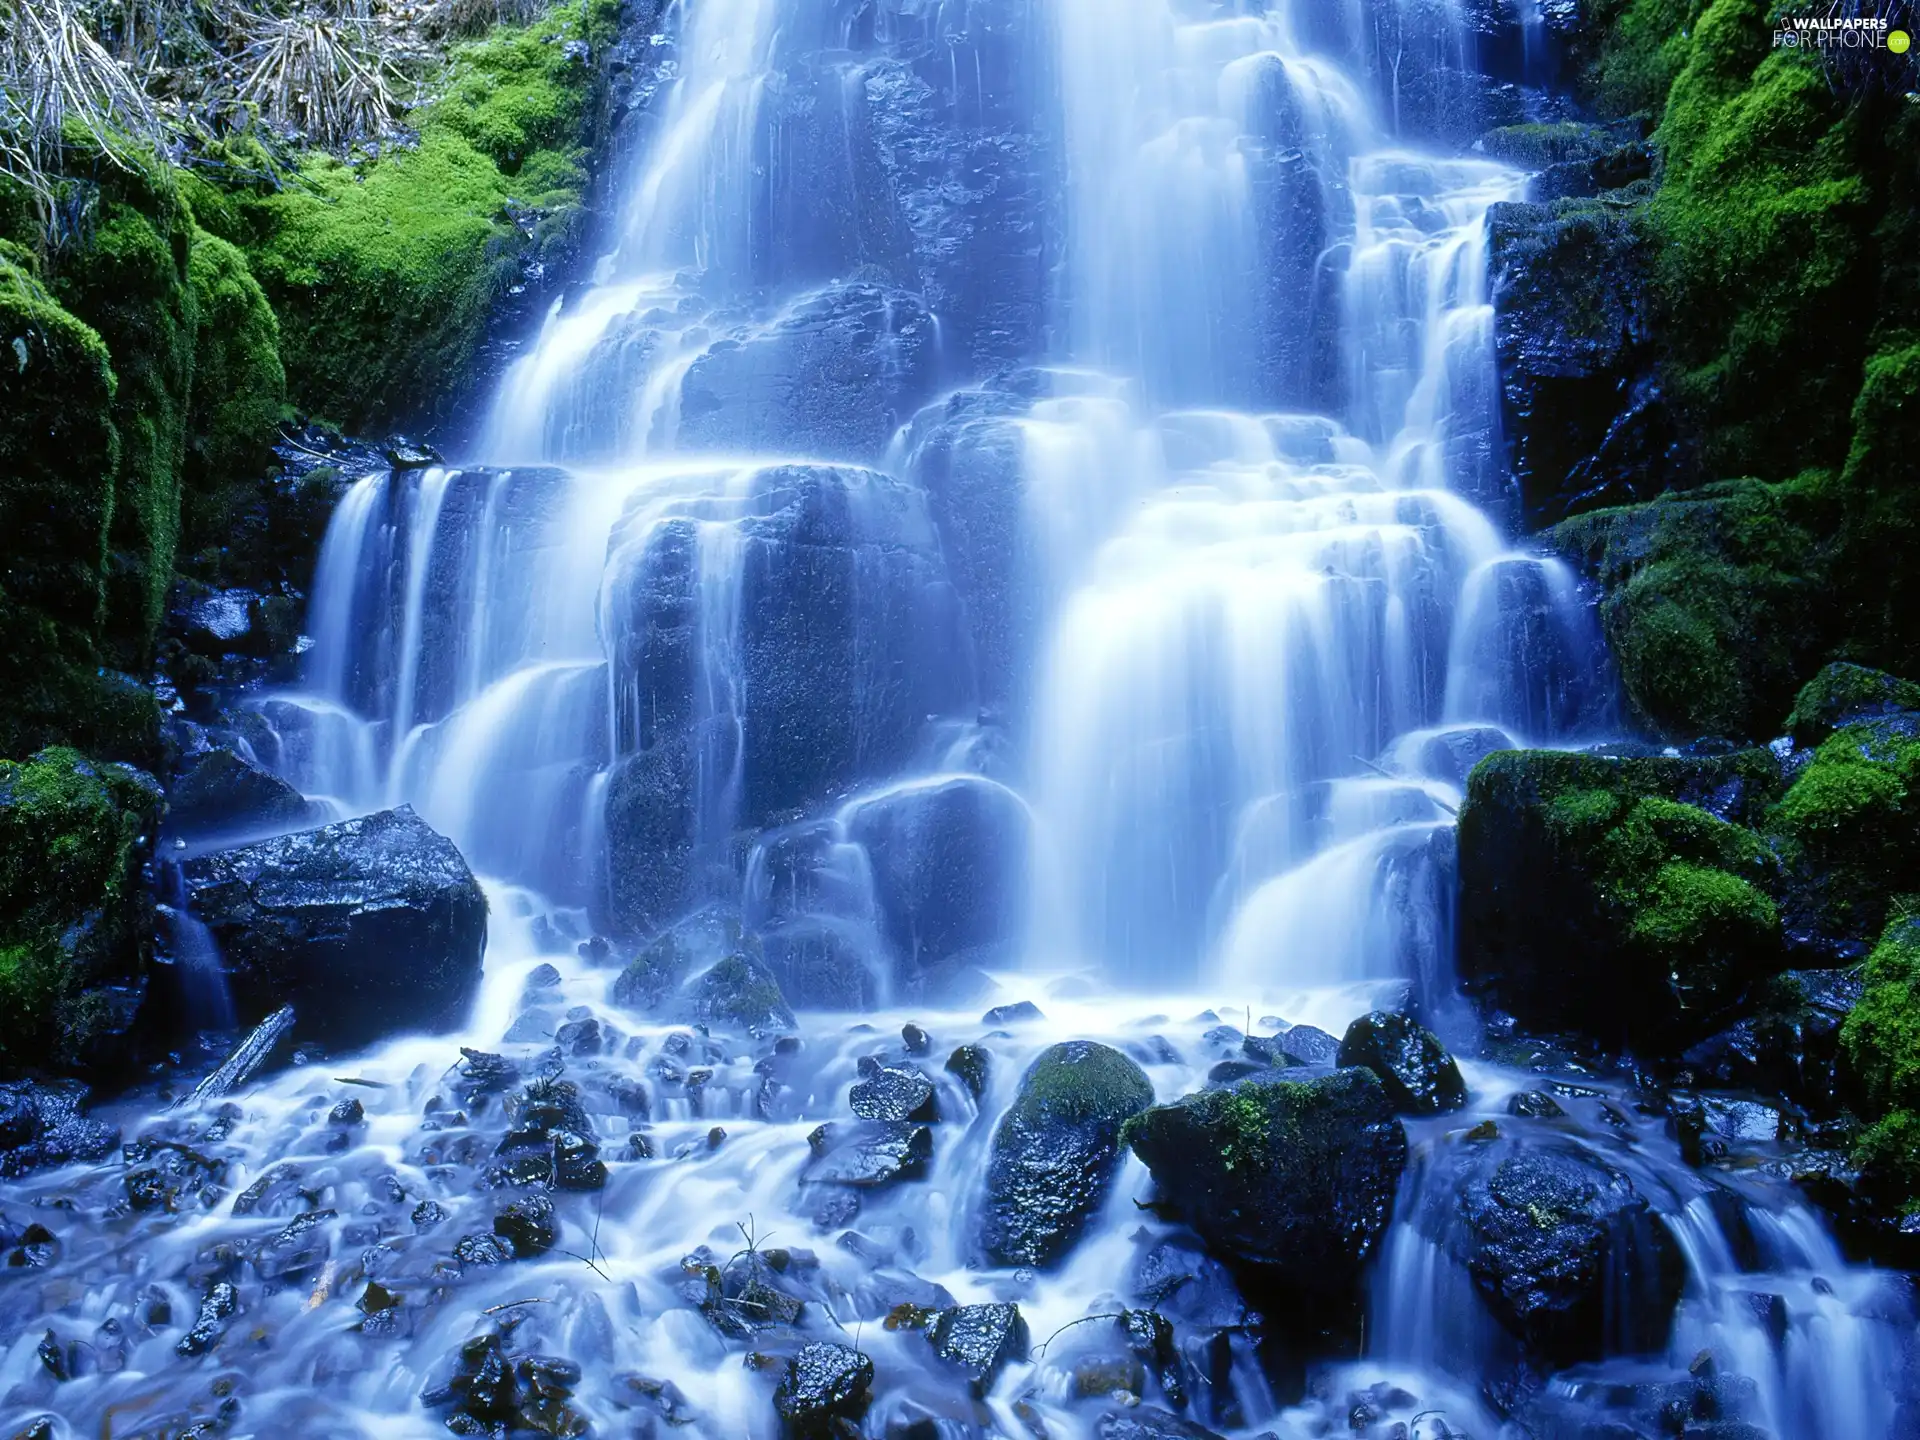 Moss, waterfall, Stones